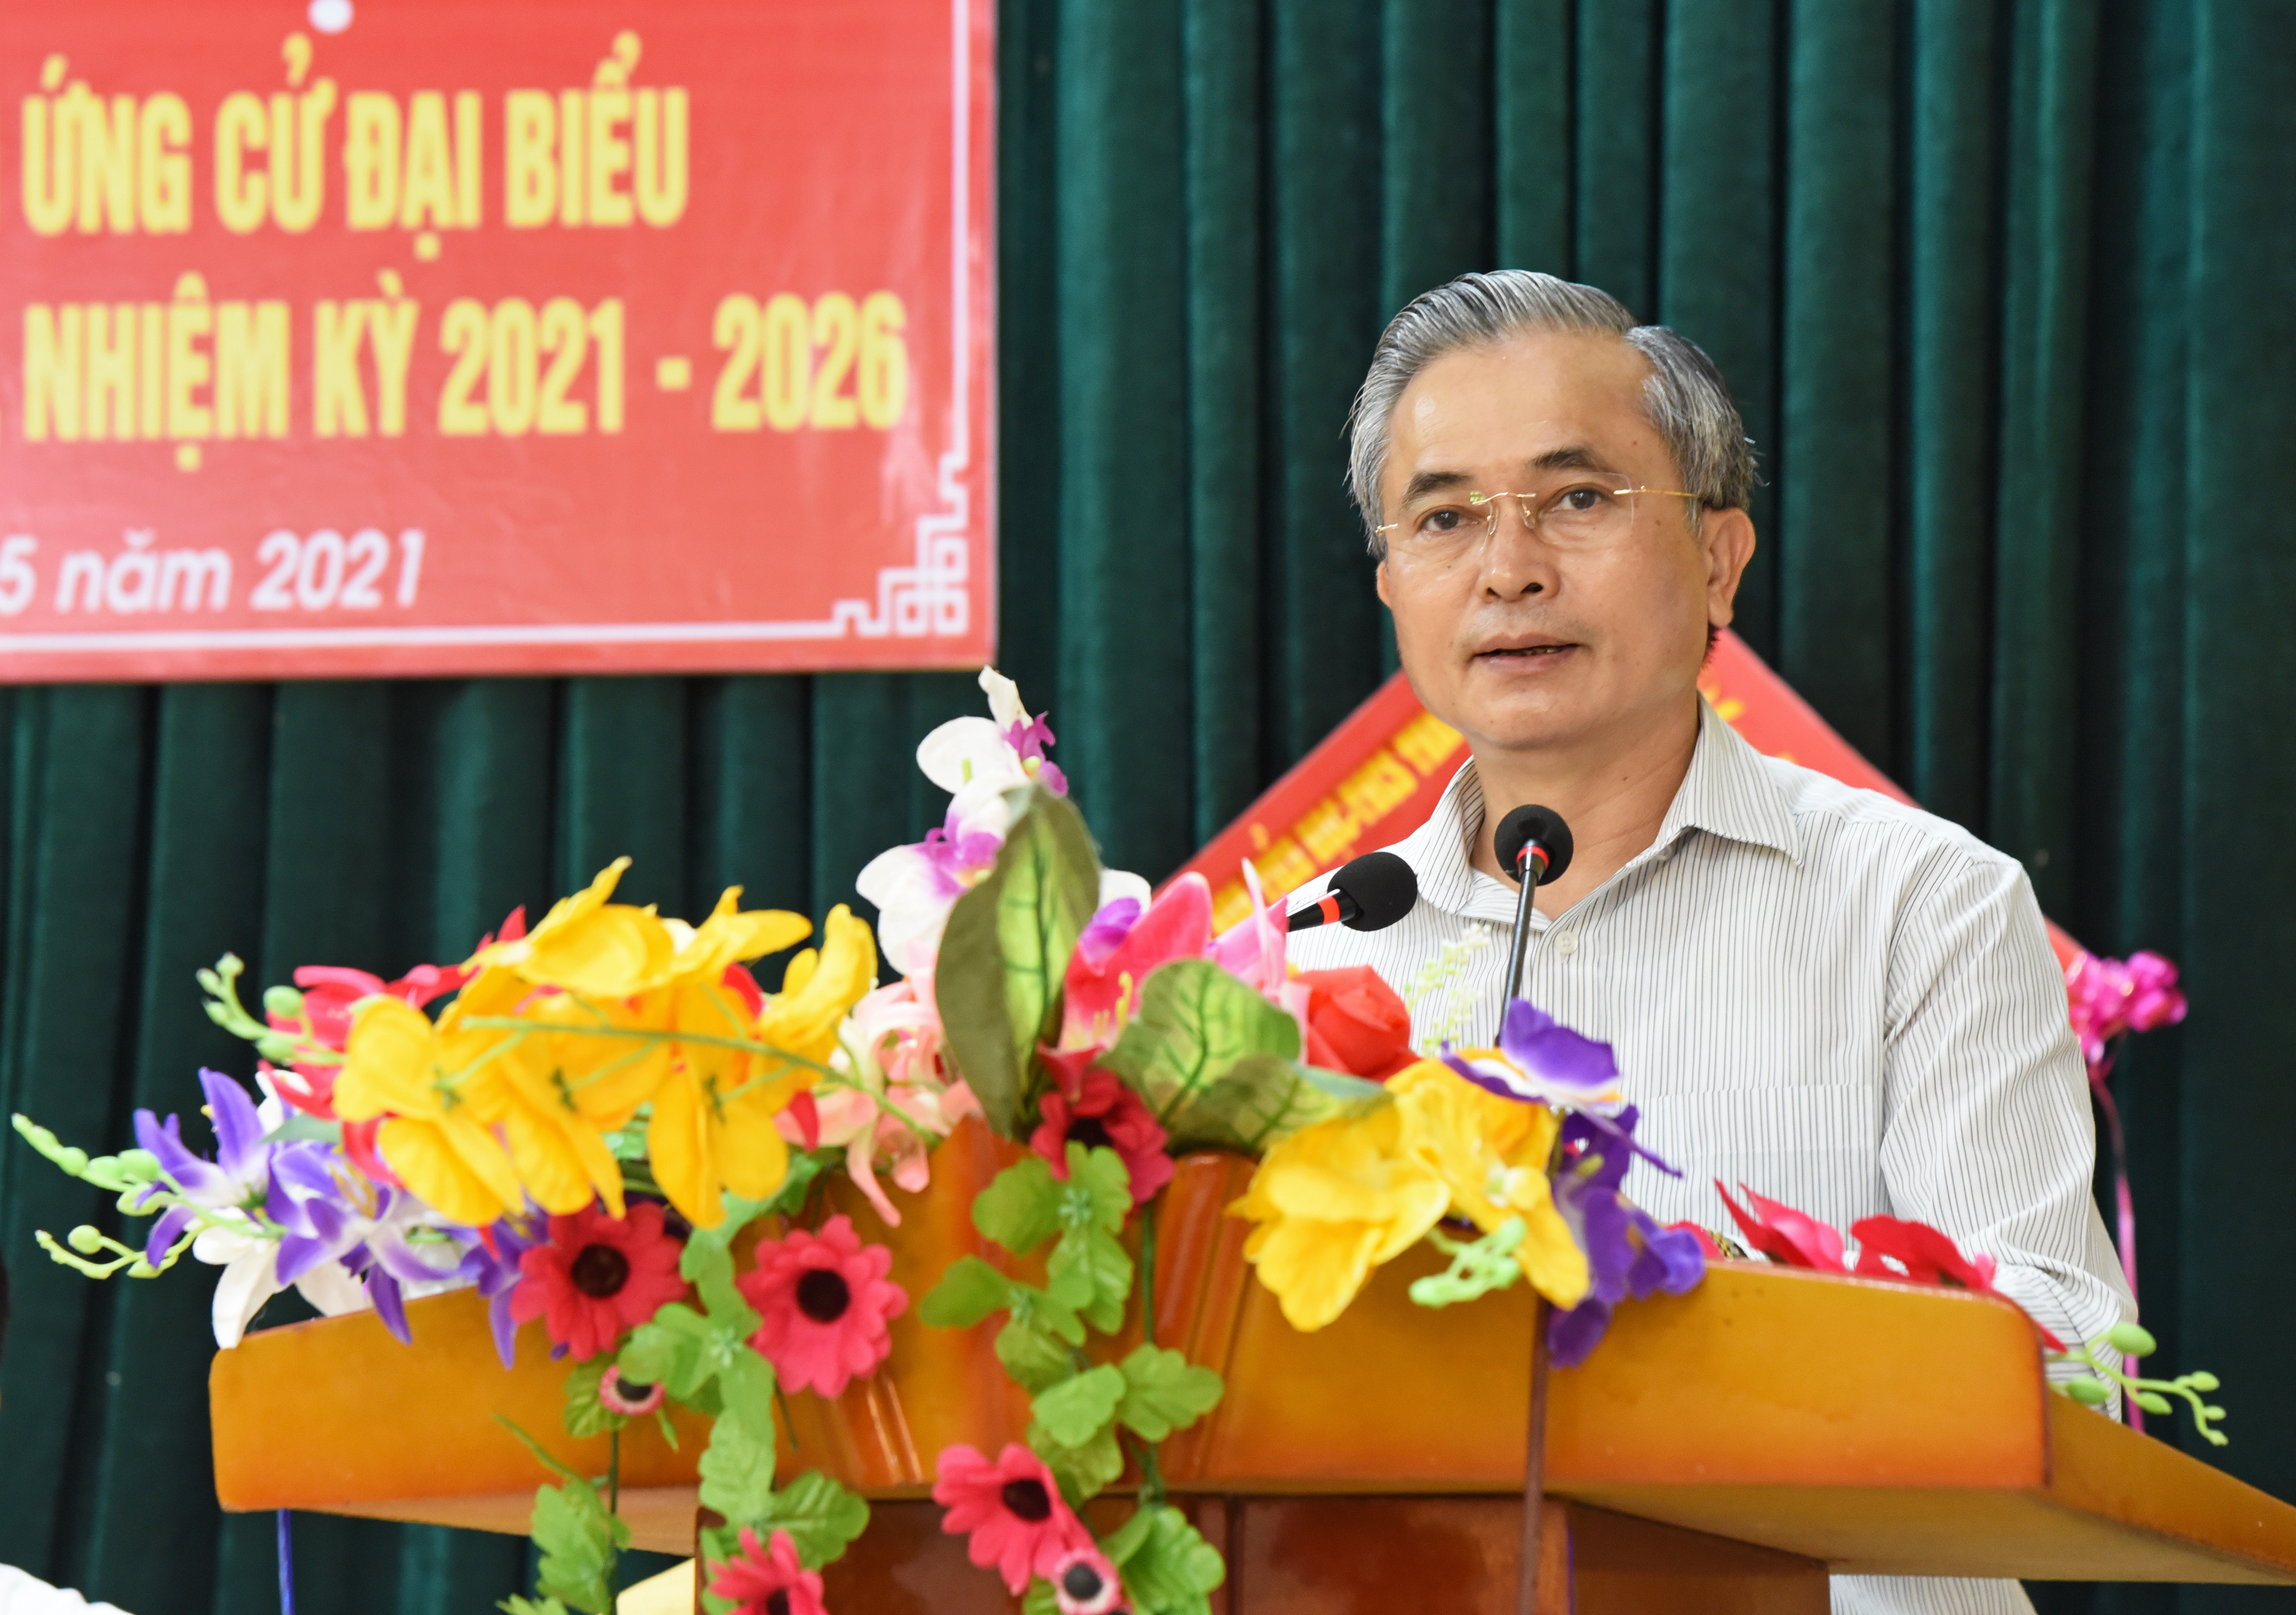 Ông Lê Ngọc Hoa - Phó Chủ tịch UBND tỉnh trình bày dự kiến chương trình hành động nếu được bầu làm đại biểu HĐND tỉnh khóa XVIII. Ảnh: TG